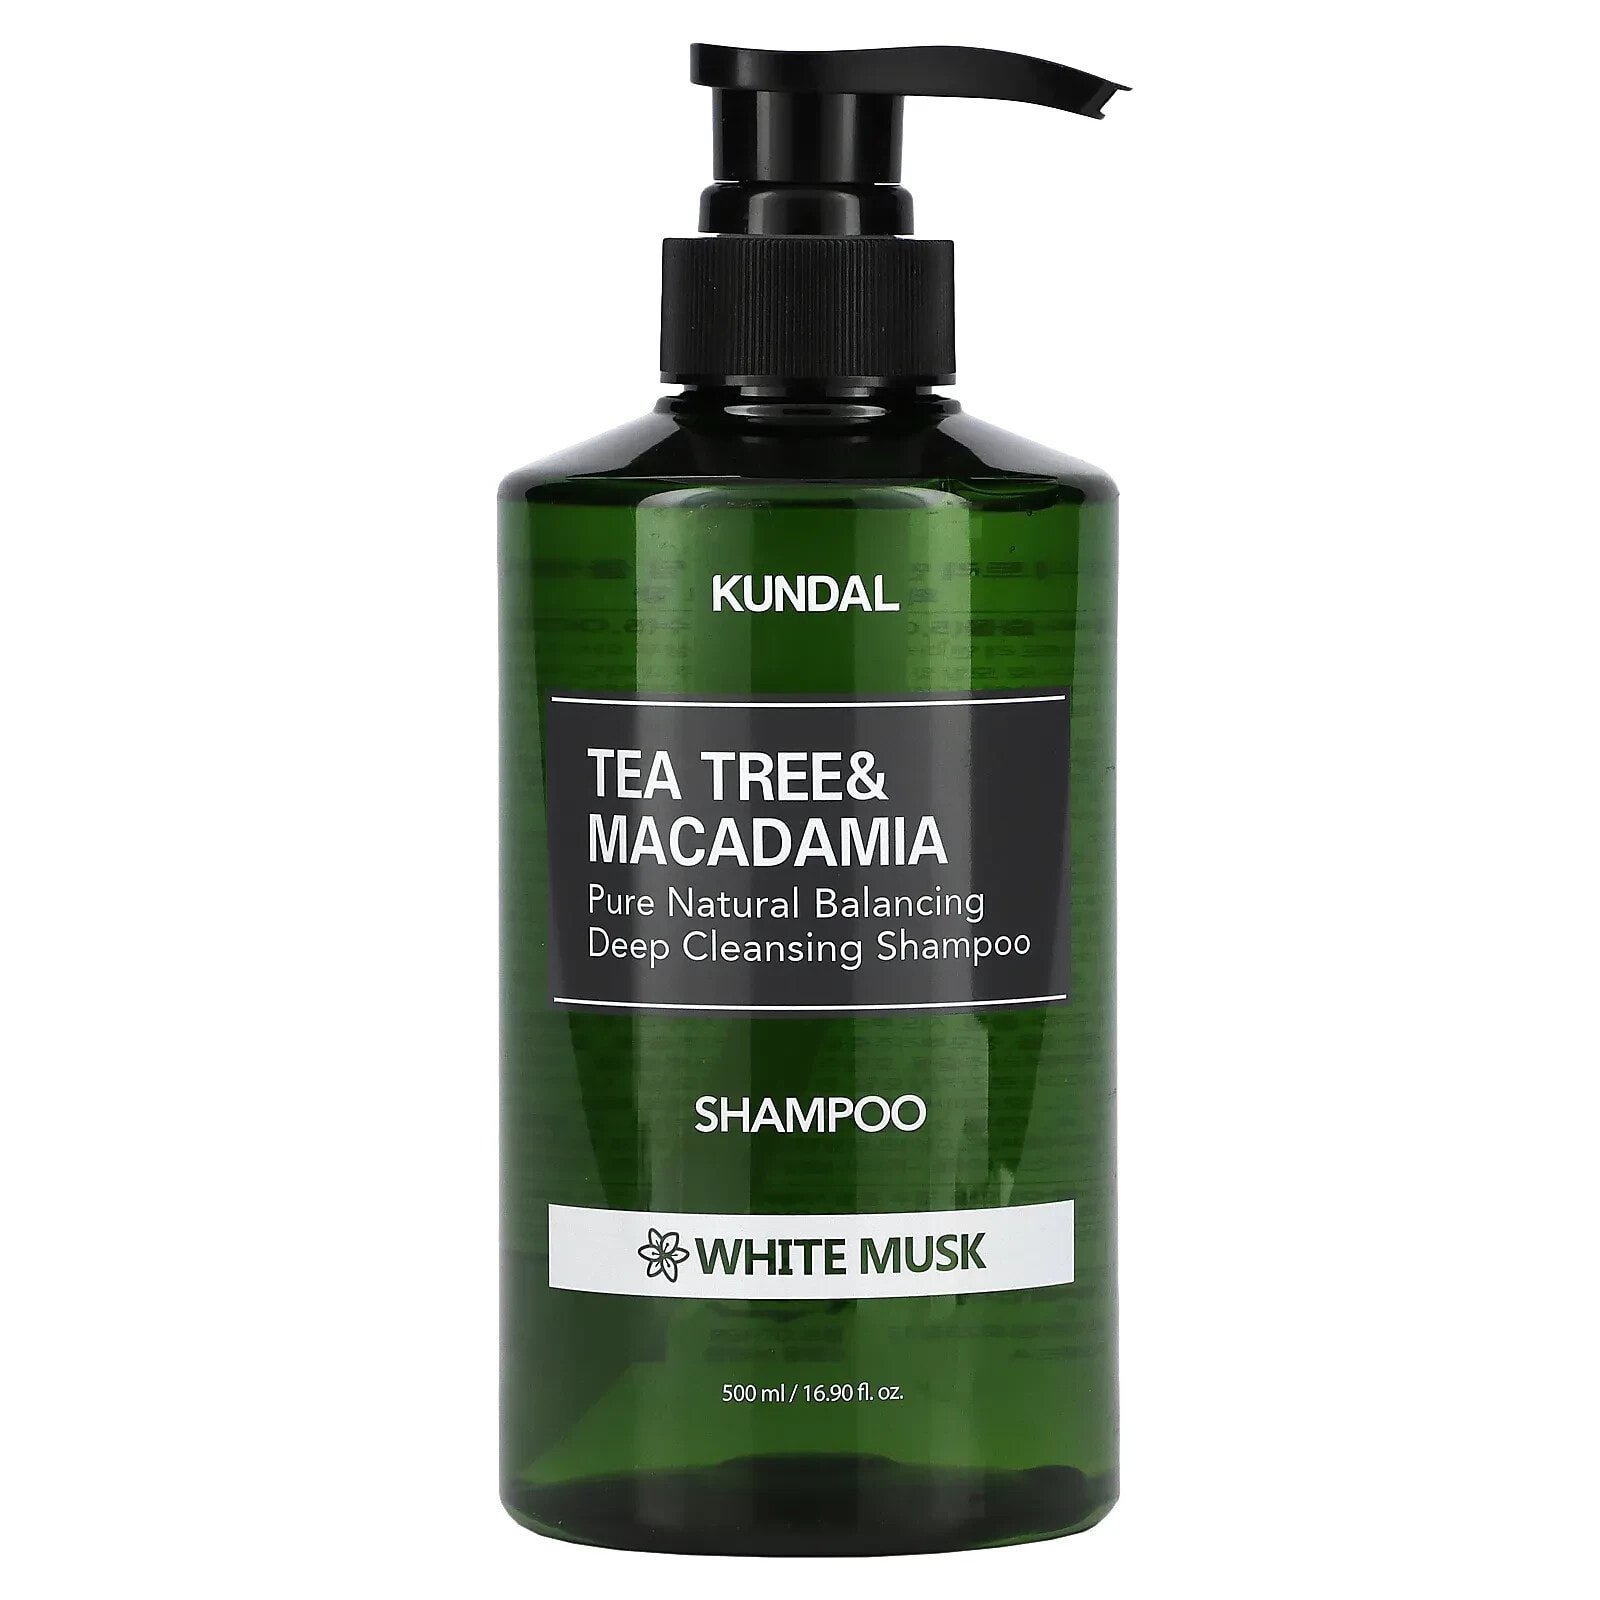 Kundal Tea Tree & Macadamia Shampoo Балансирующий и глубоко очищающий шампунь с экстрактом чайного дерева, маслом макадами и ароматом белого мускуса 500 мл